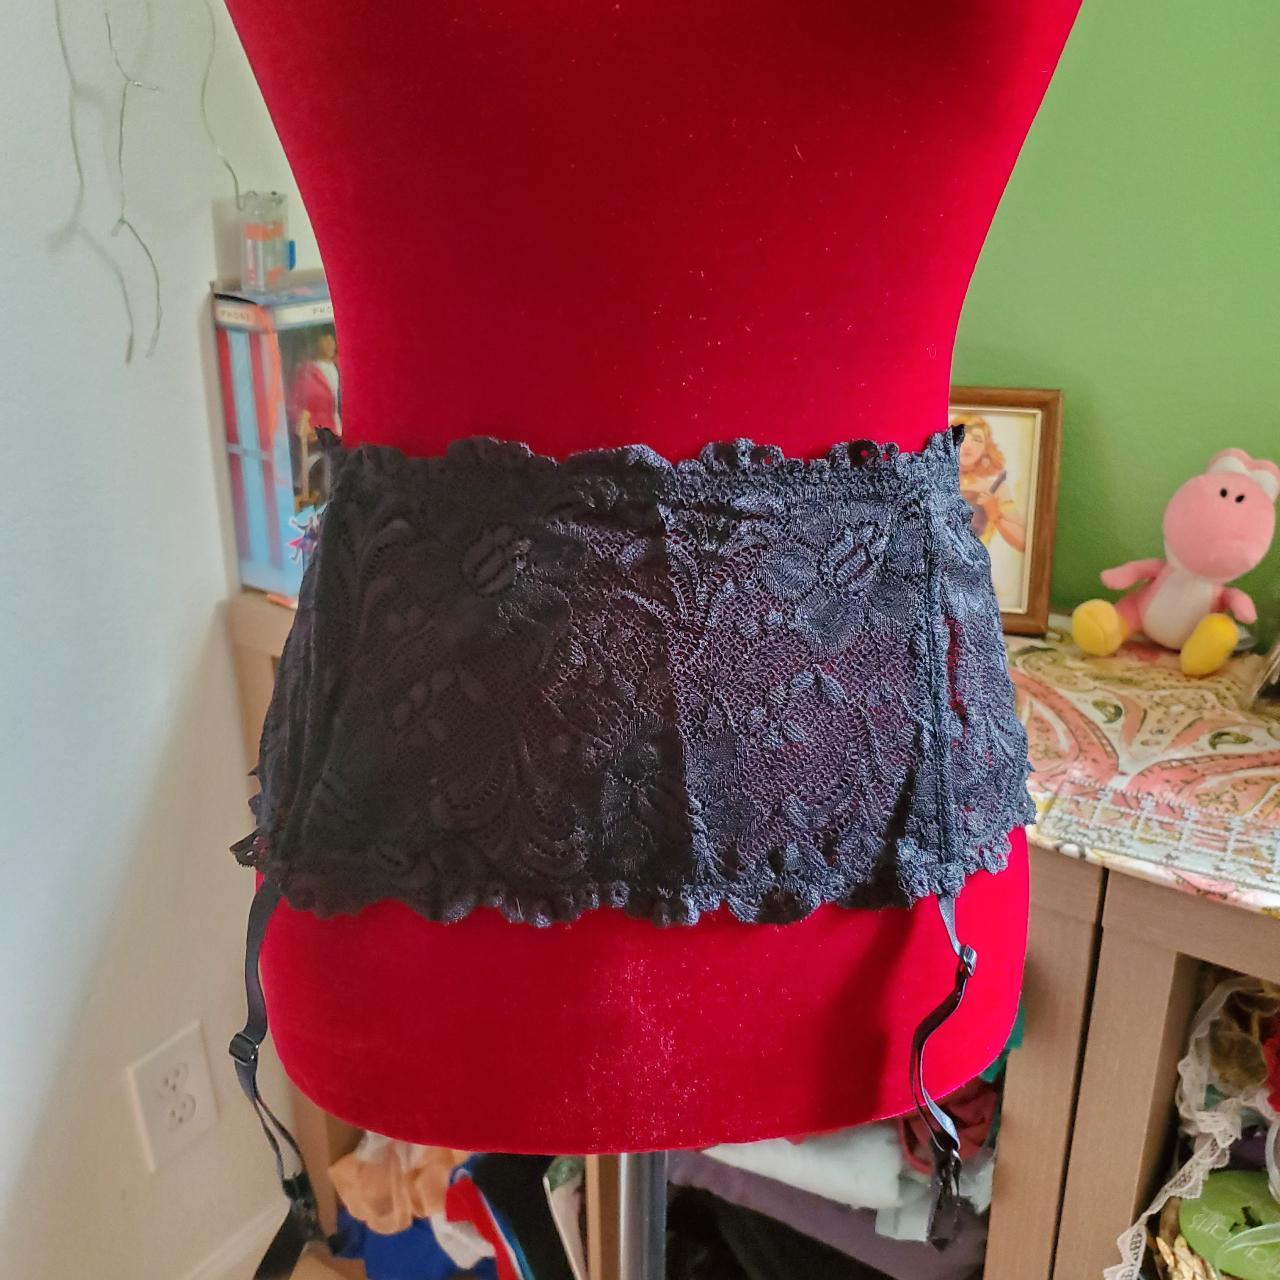 Black floral lace garter belt from Cacique! Includes... - Depop